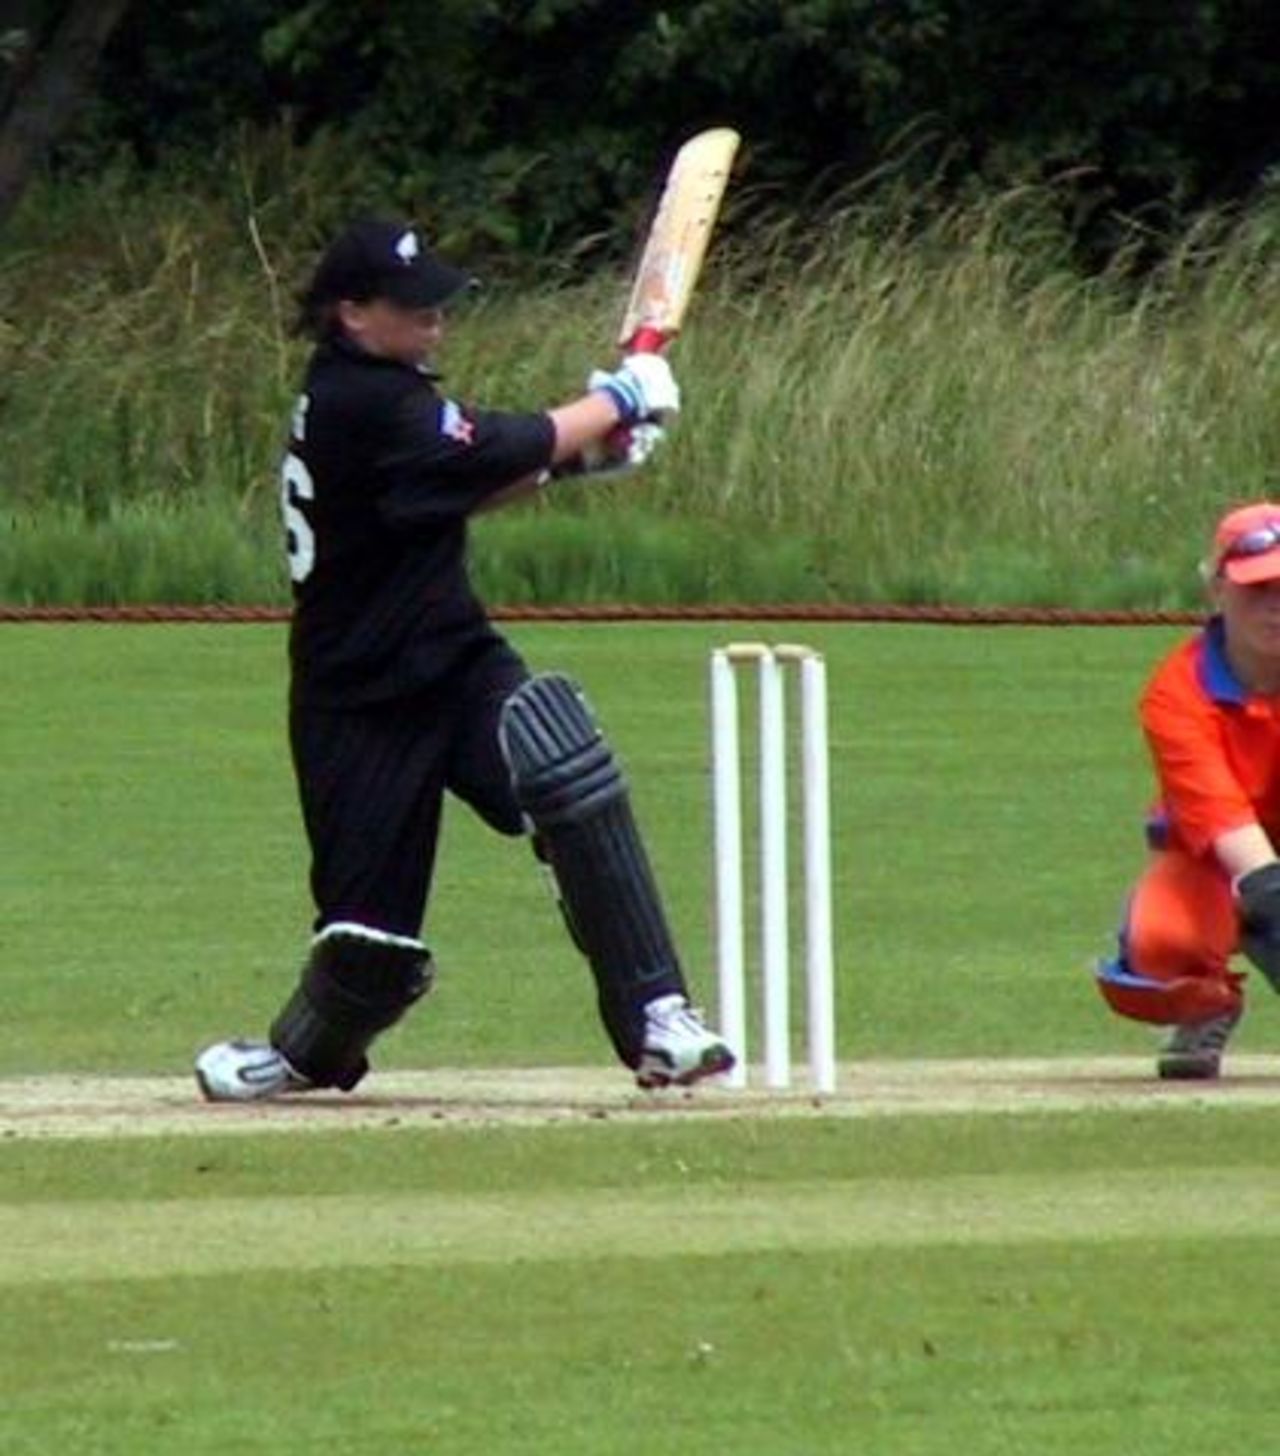 Frances King batting for New Zealand against Netherlands, 28 June 2002